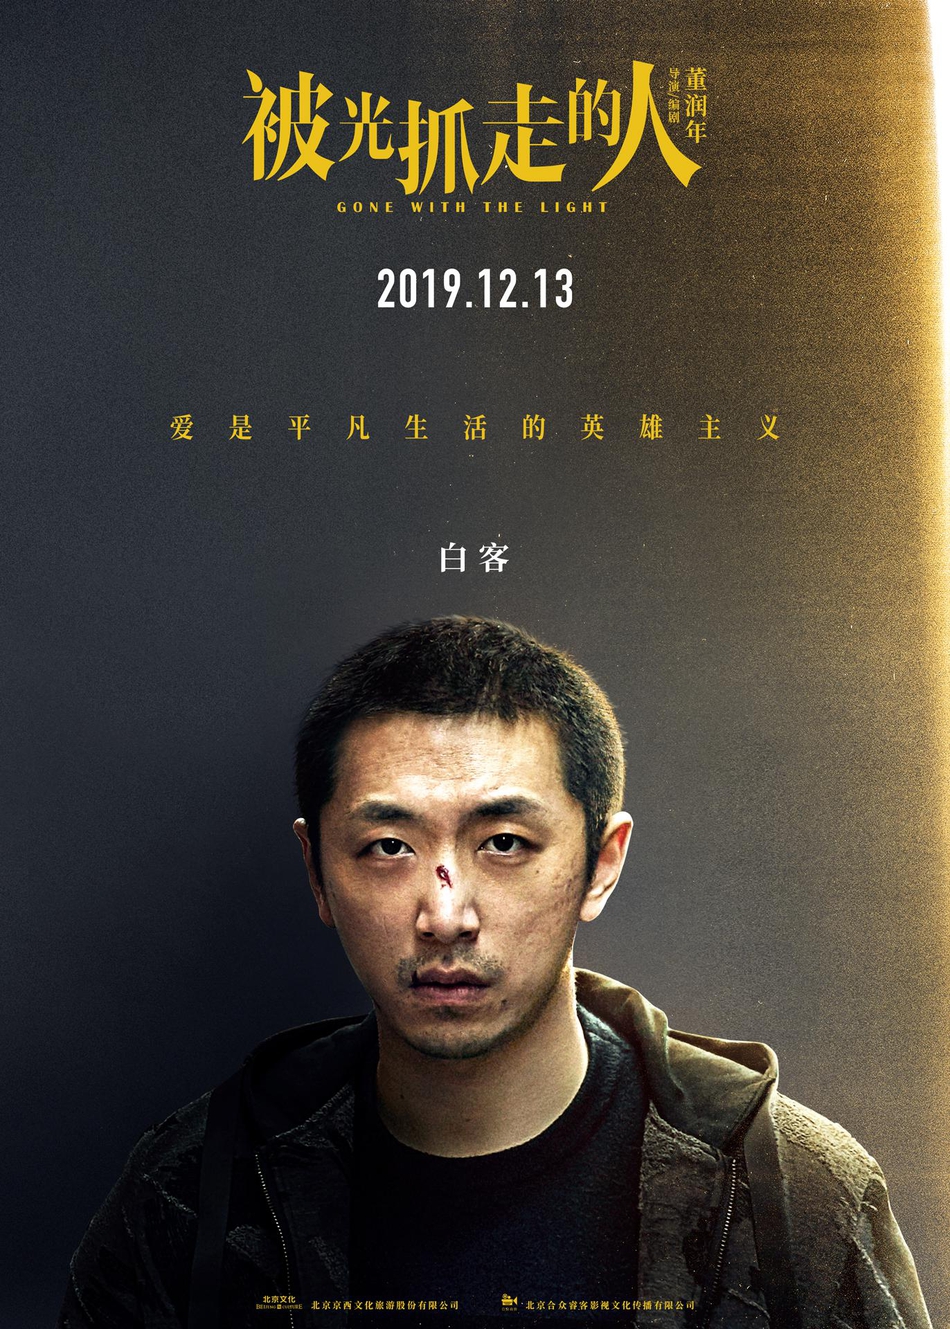 12月13日，黄渤、王珞丹主演电影《被光抓走的人》定档海报人物图片第6张